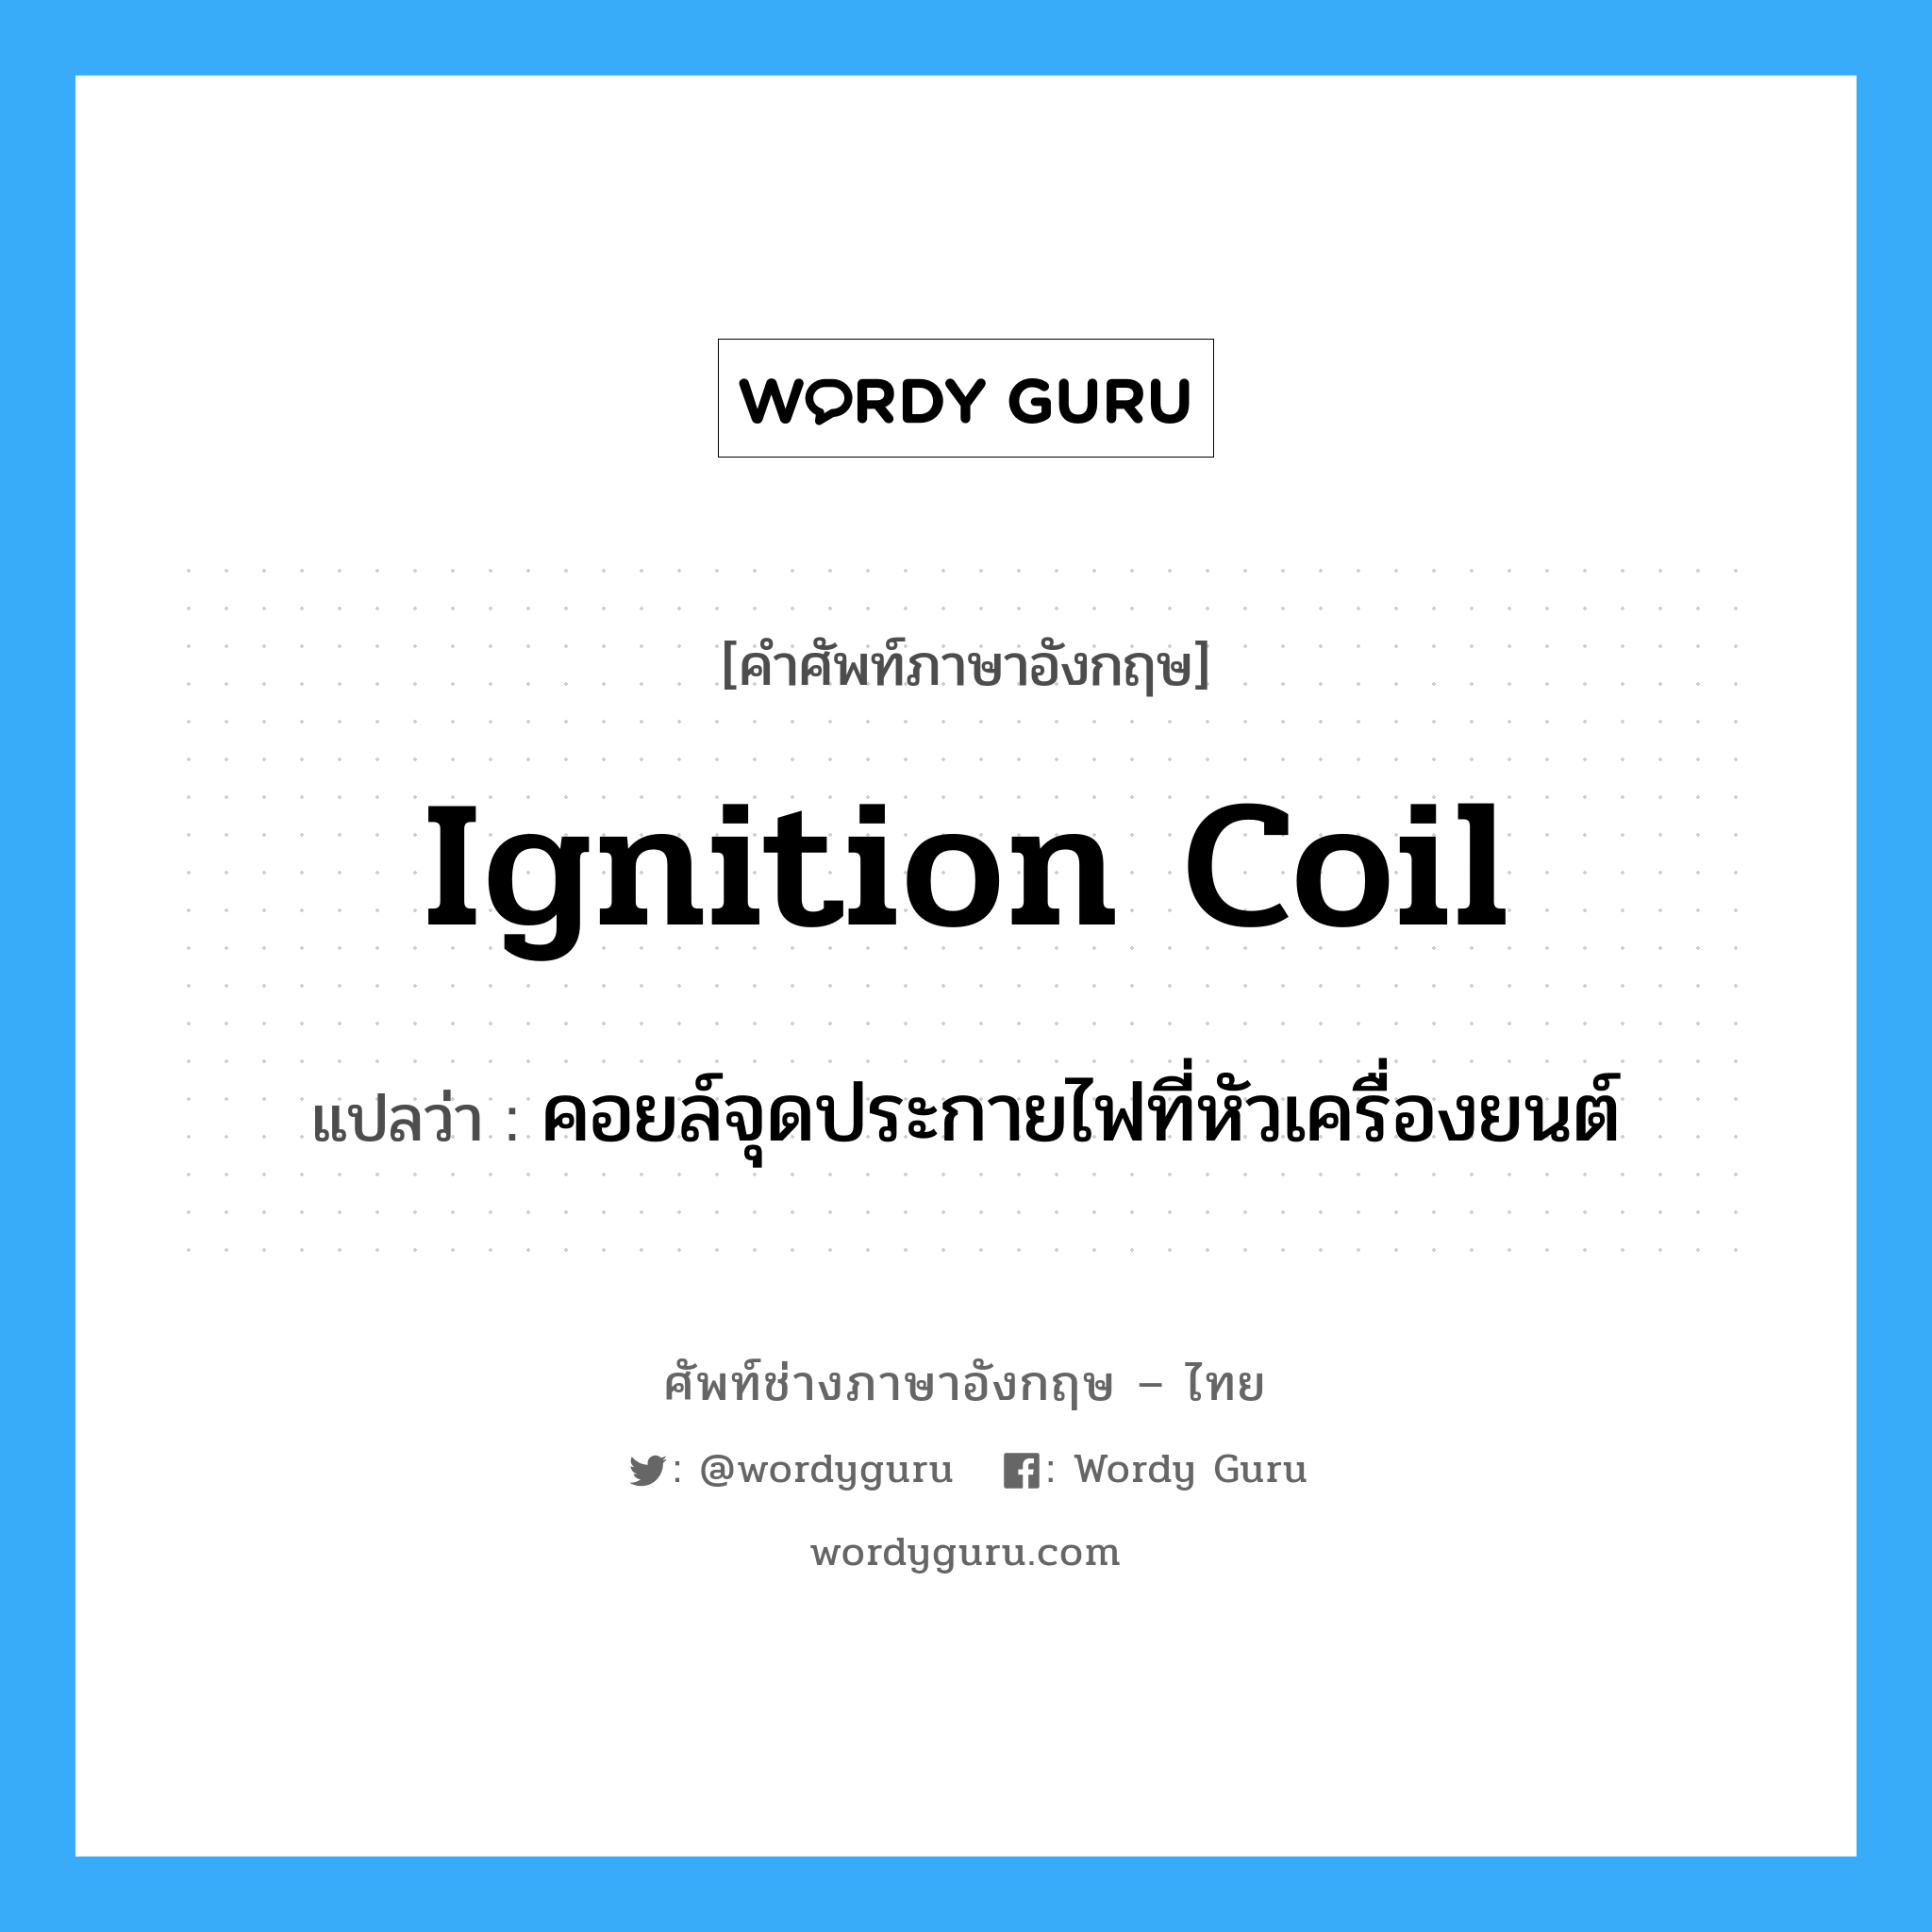 ignition coil แปลว่า?, คำศัพท์ช่างภาษาอังกฤษ - ไทย ignition coil คำศัพท์ภาษาอังกฤษ ignition coil แปลว่า คอยล์จุดประกายไฟที่หัวเครื่องยนต์